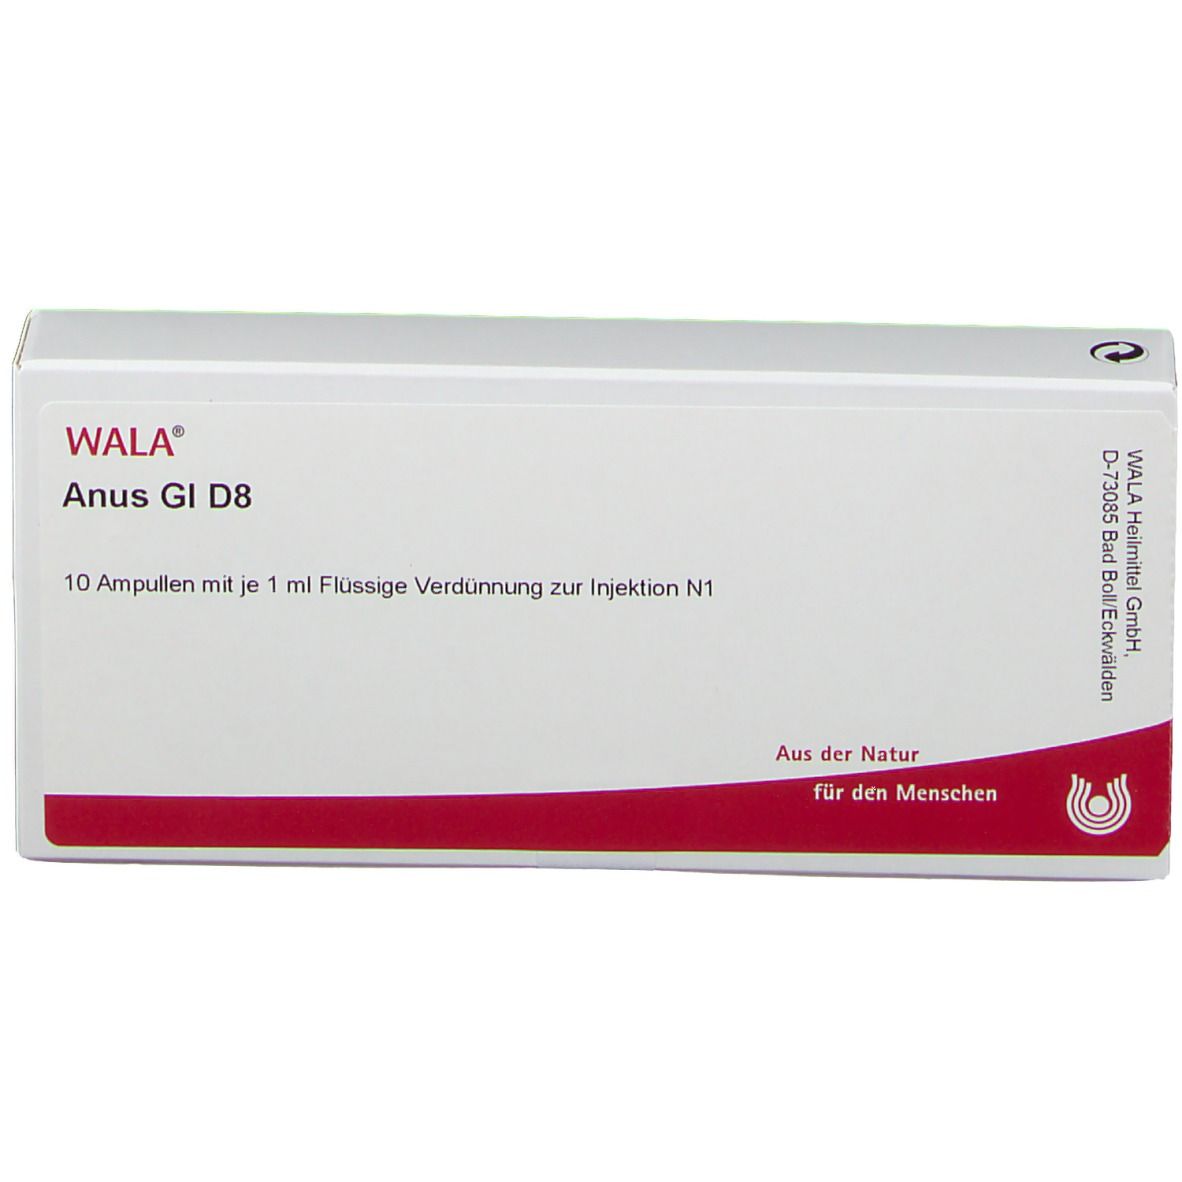 WALA® Anus Gl D 8